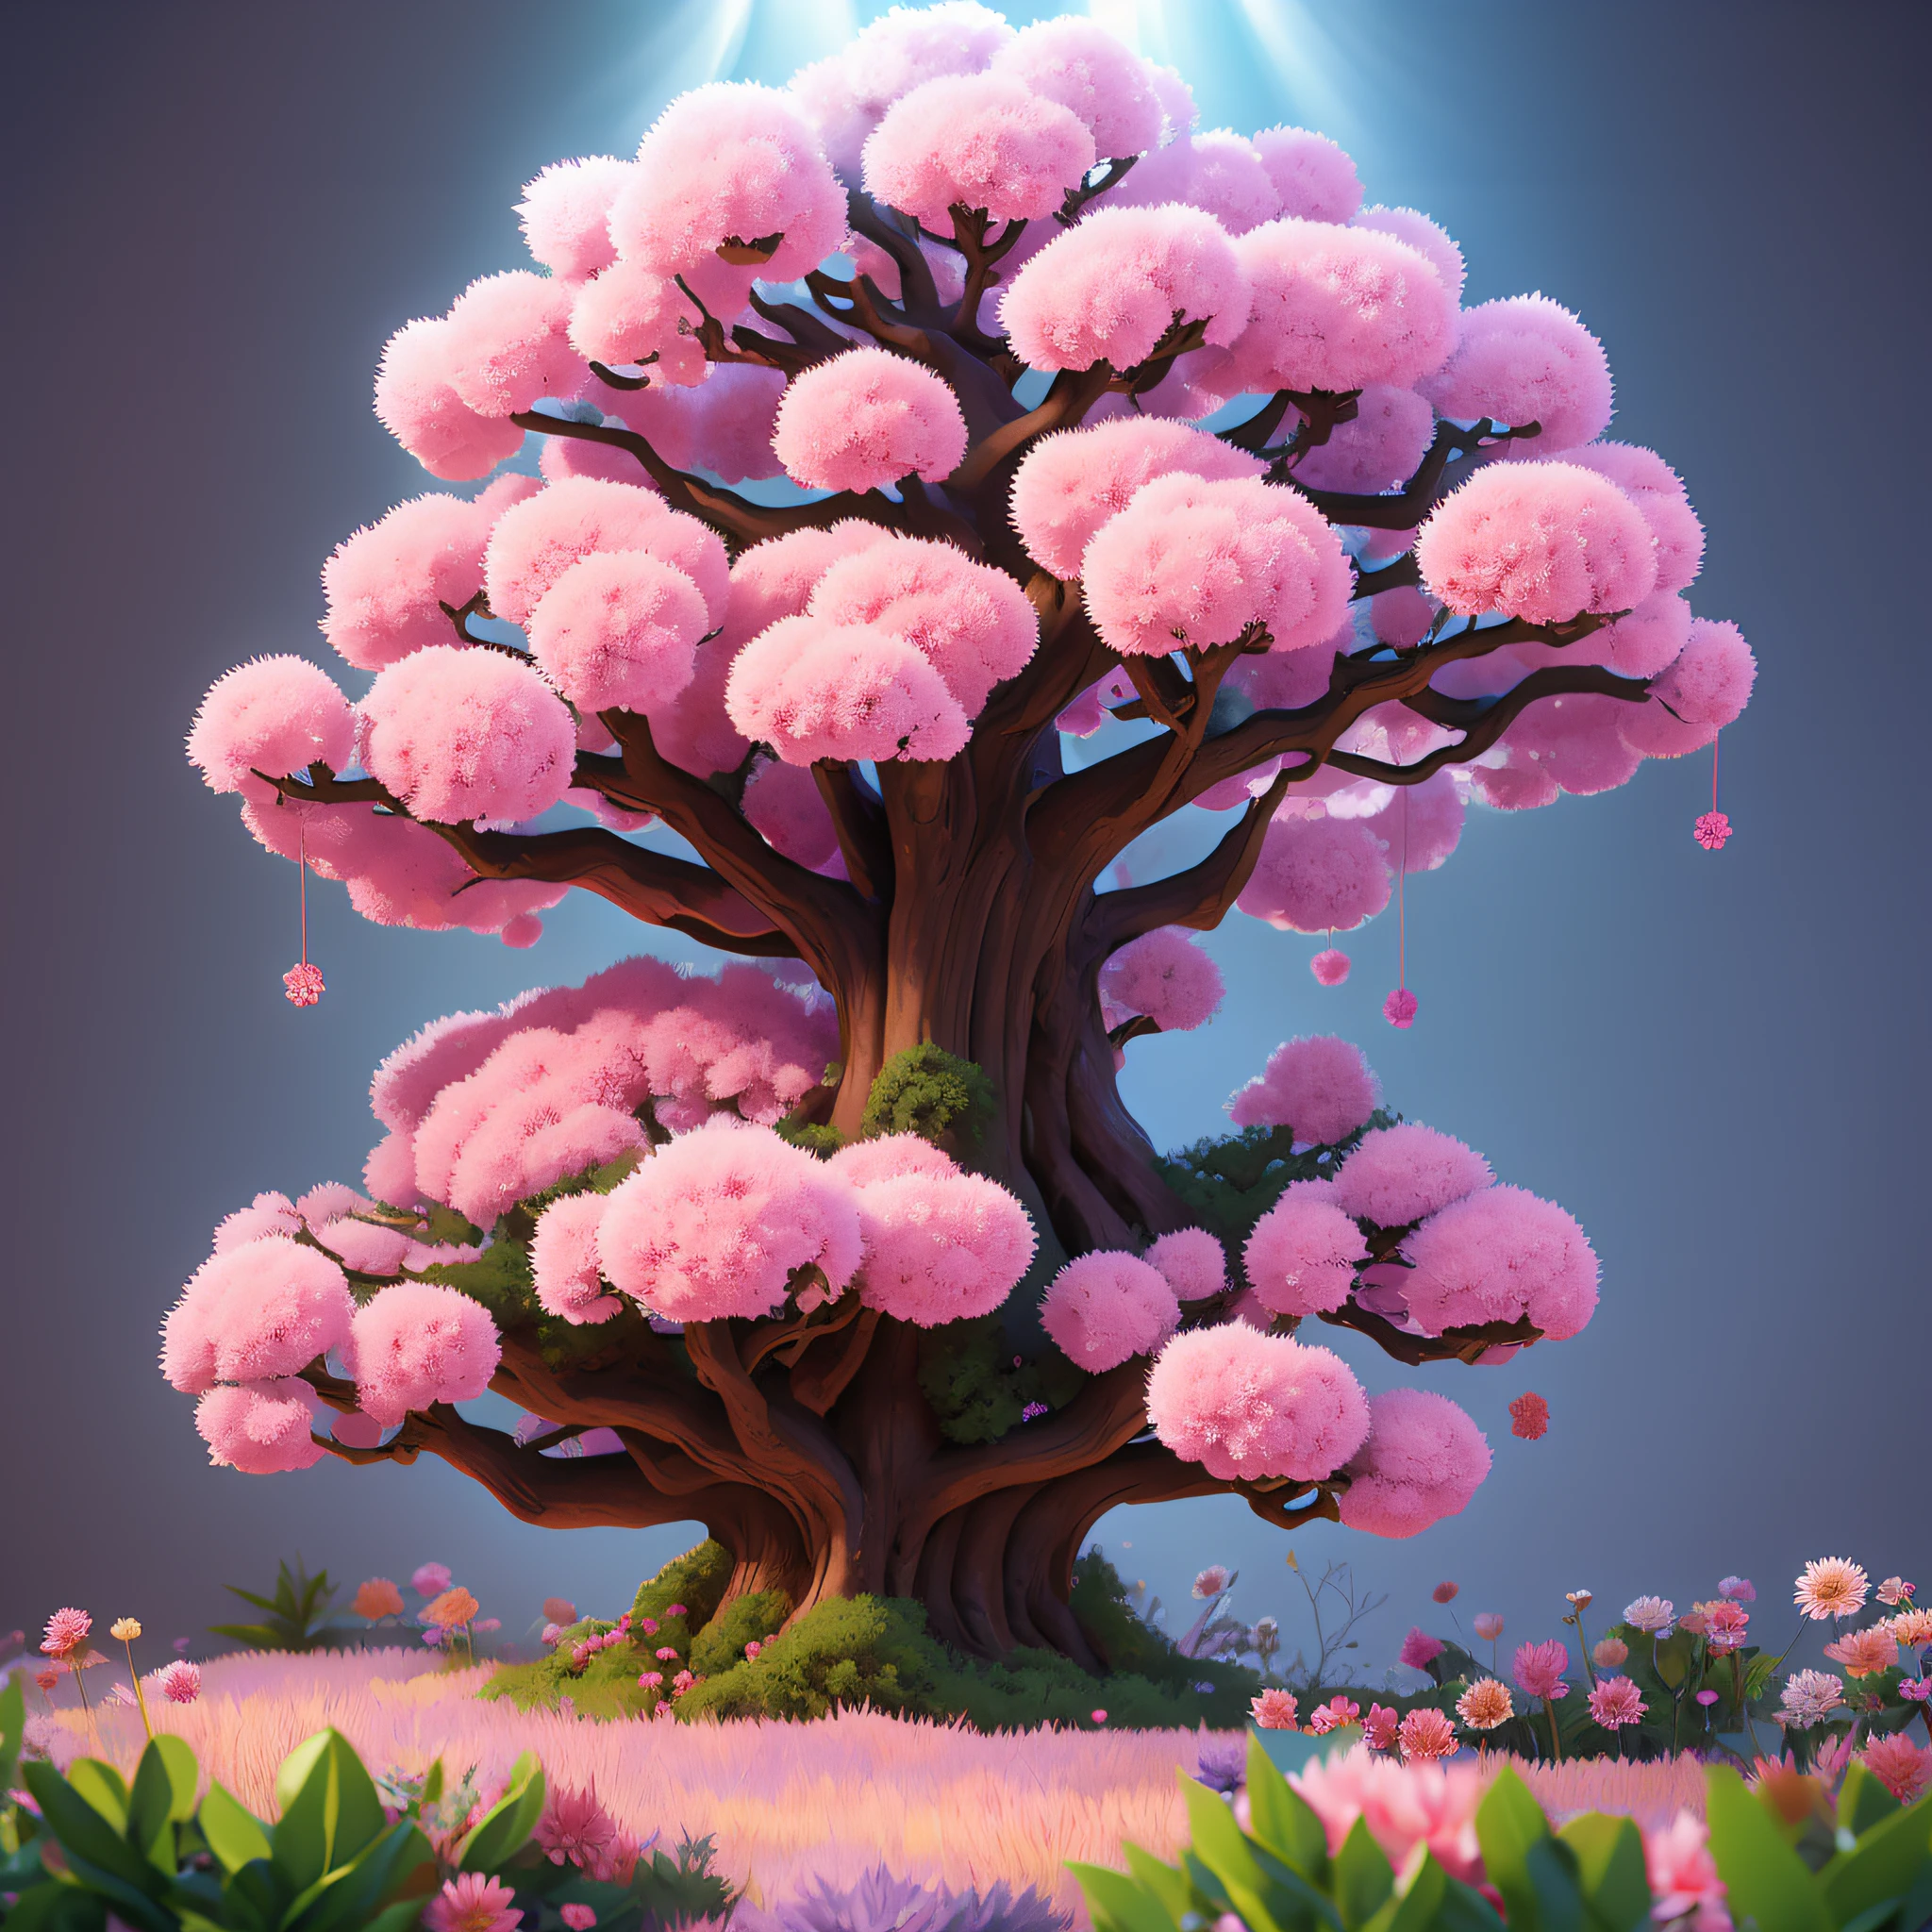 ต้นไม้ใหญ่ปรากฏอกดอกสีชมพูและสีม่วงสวยงาม